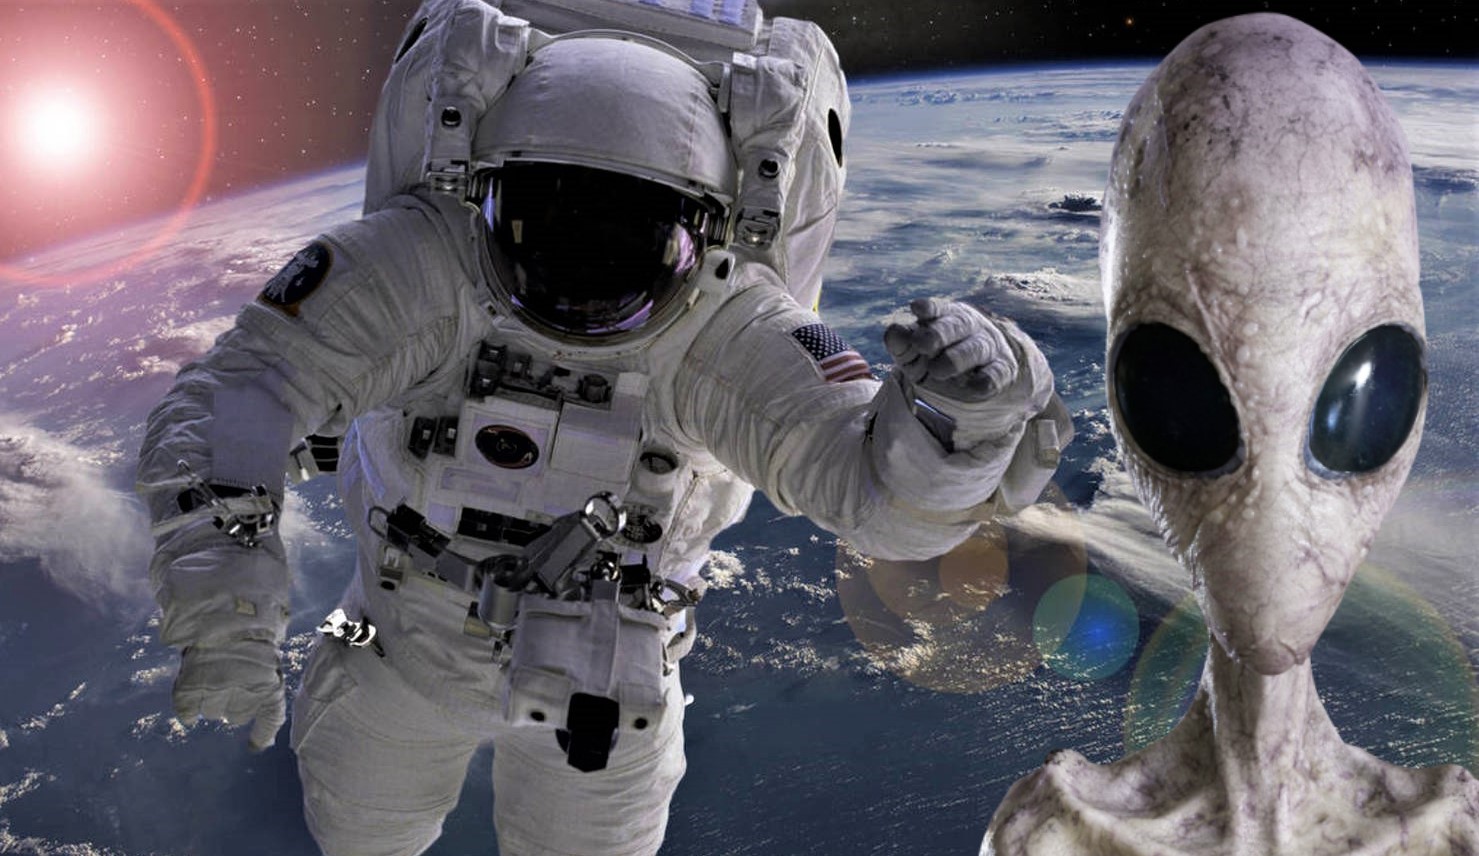 Algo muy extraño le pasa a todos los astronautas en el espacio (Video)